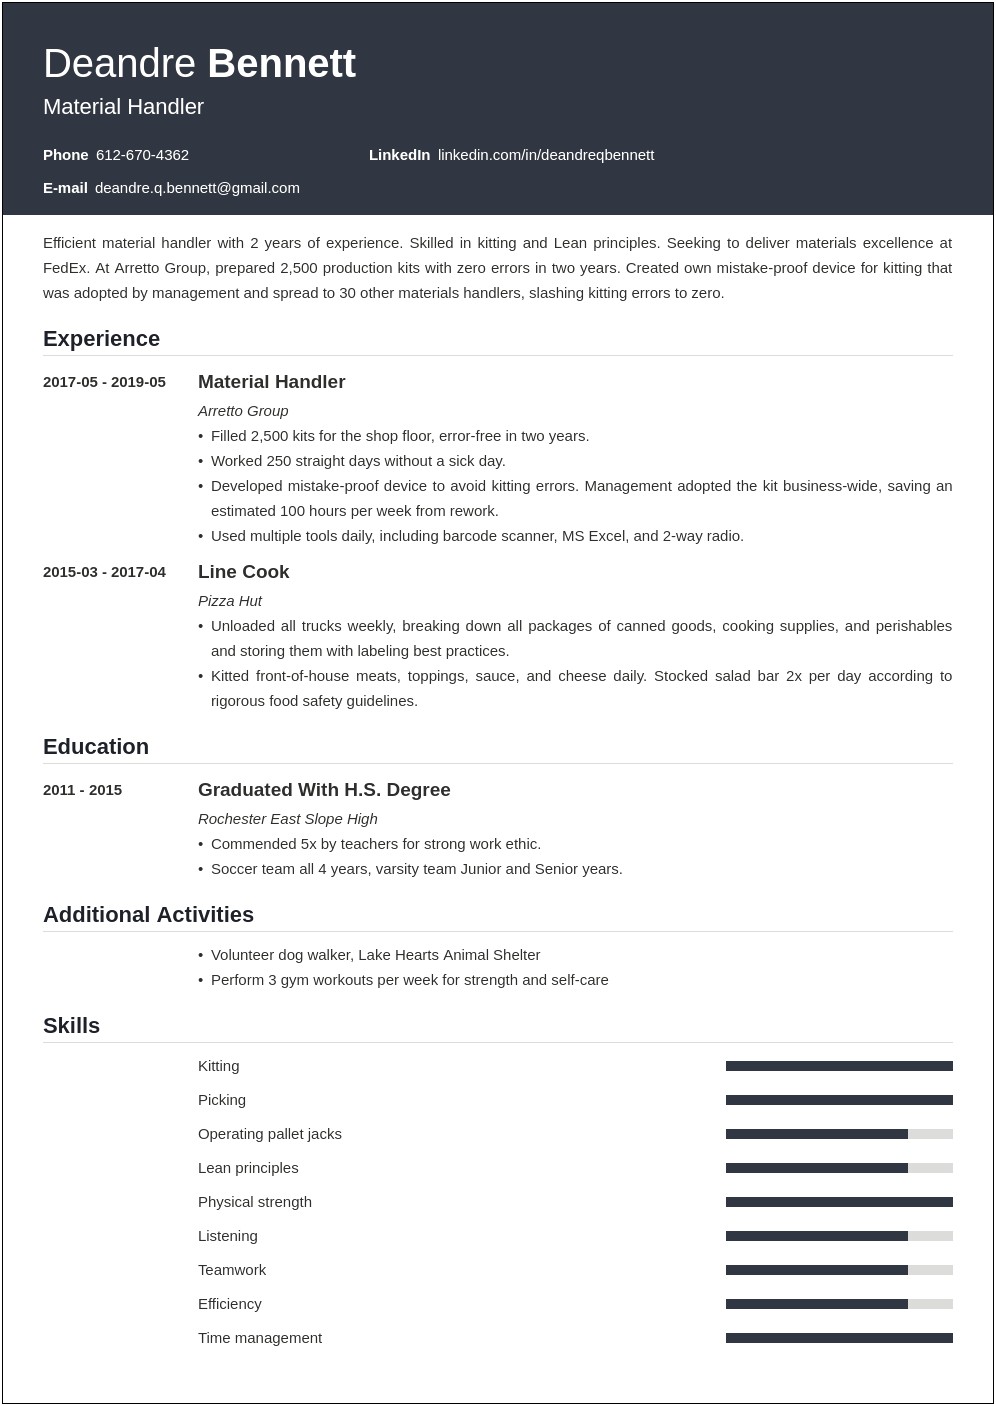 Job Description For Material Handler For Resume